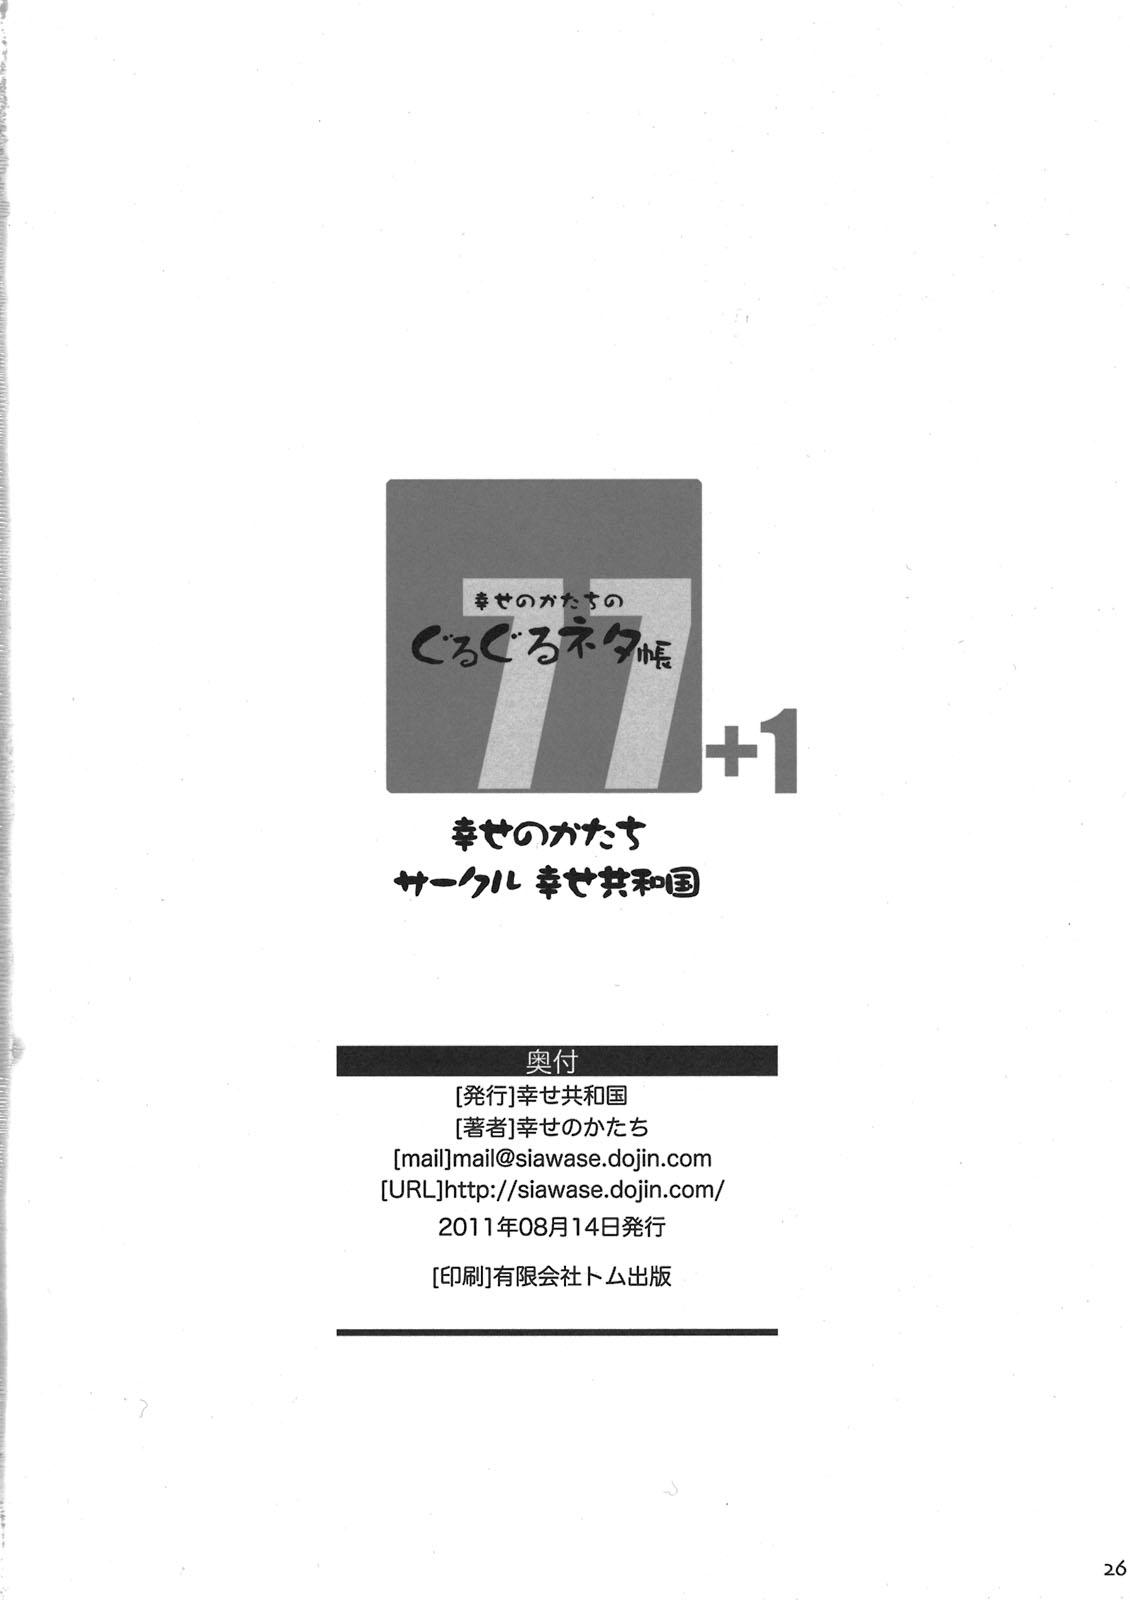 Fist Shiawase no Katachi no Guruguru Netachou 77+1 Ddf Porn - Page 26